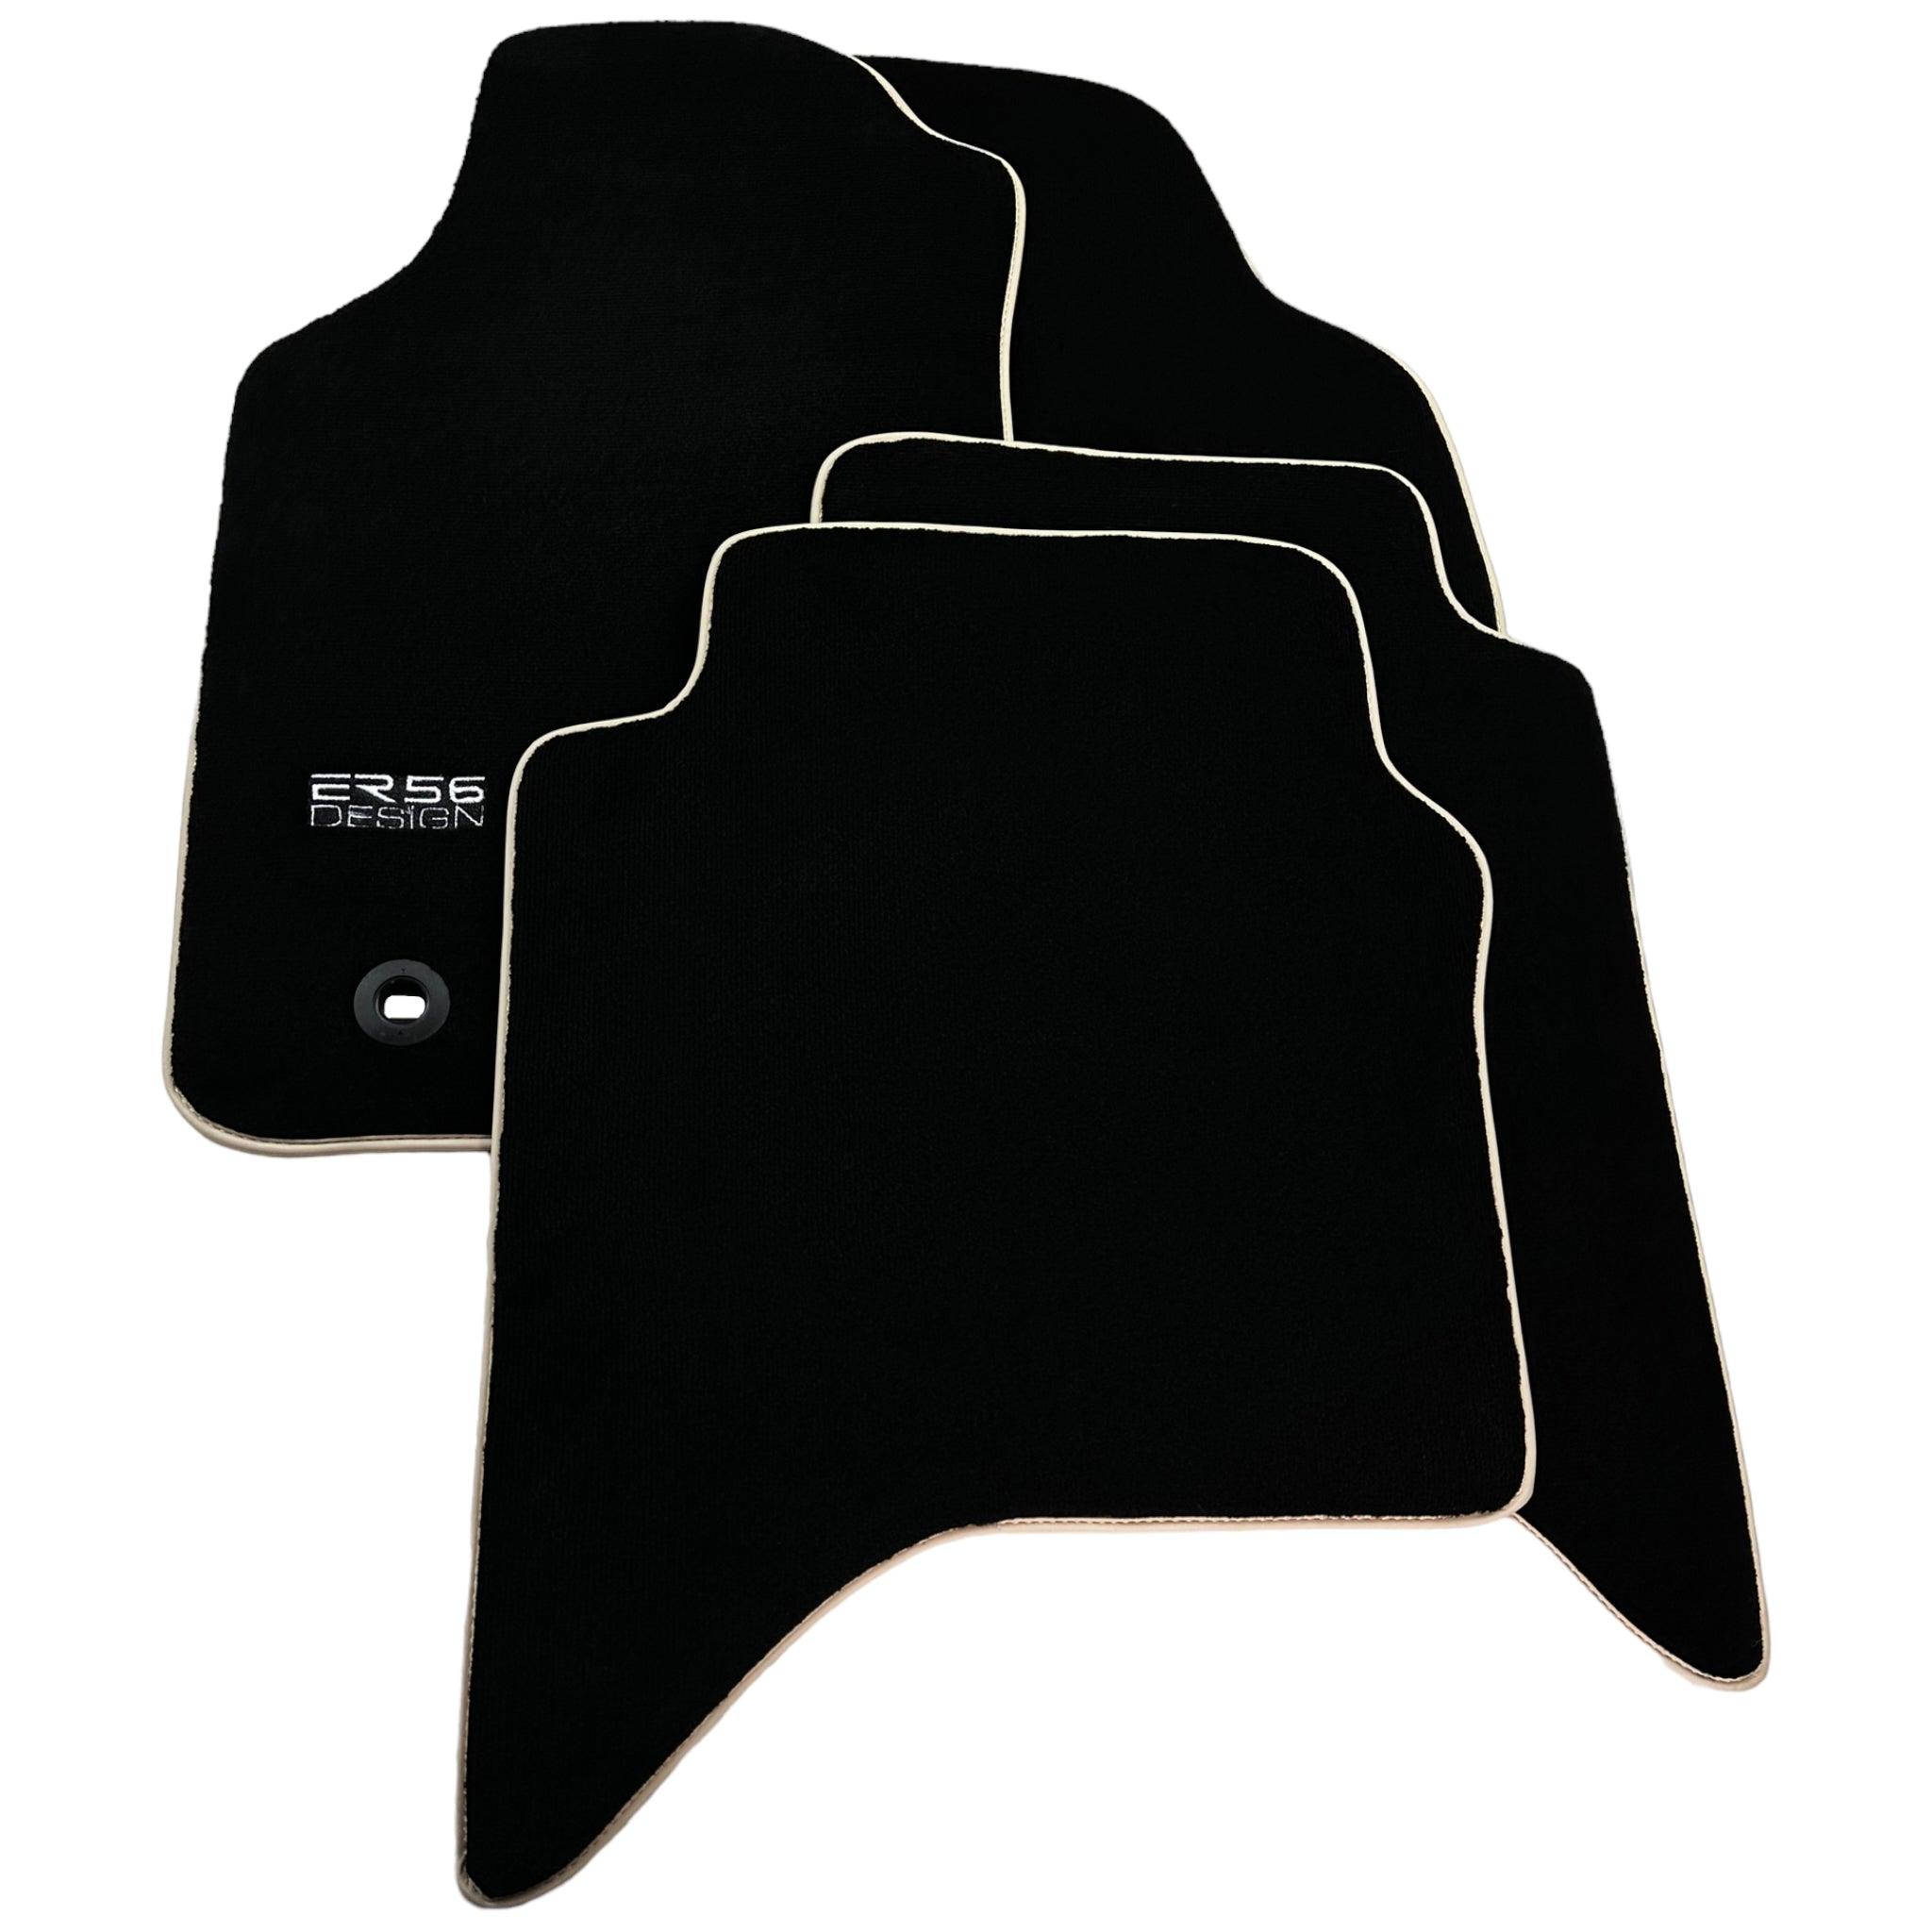 Black Floor Mats For Toyota Hilux (2005-2015) ER56 Design